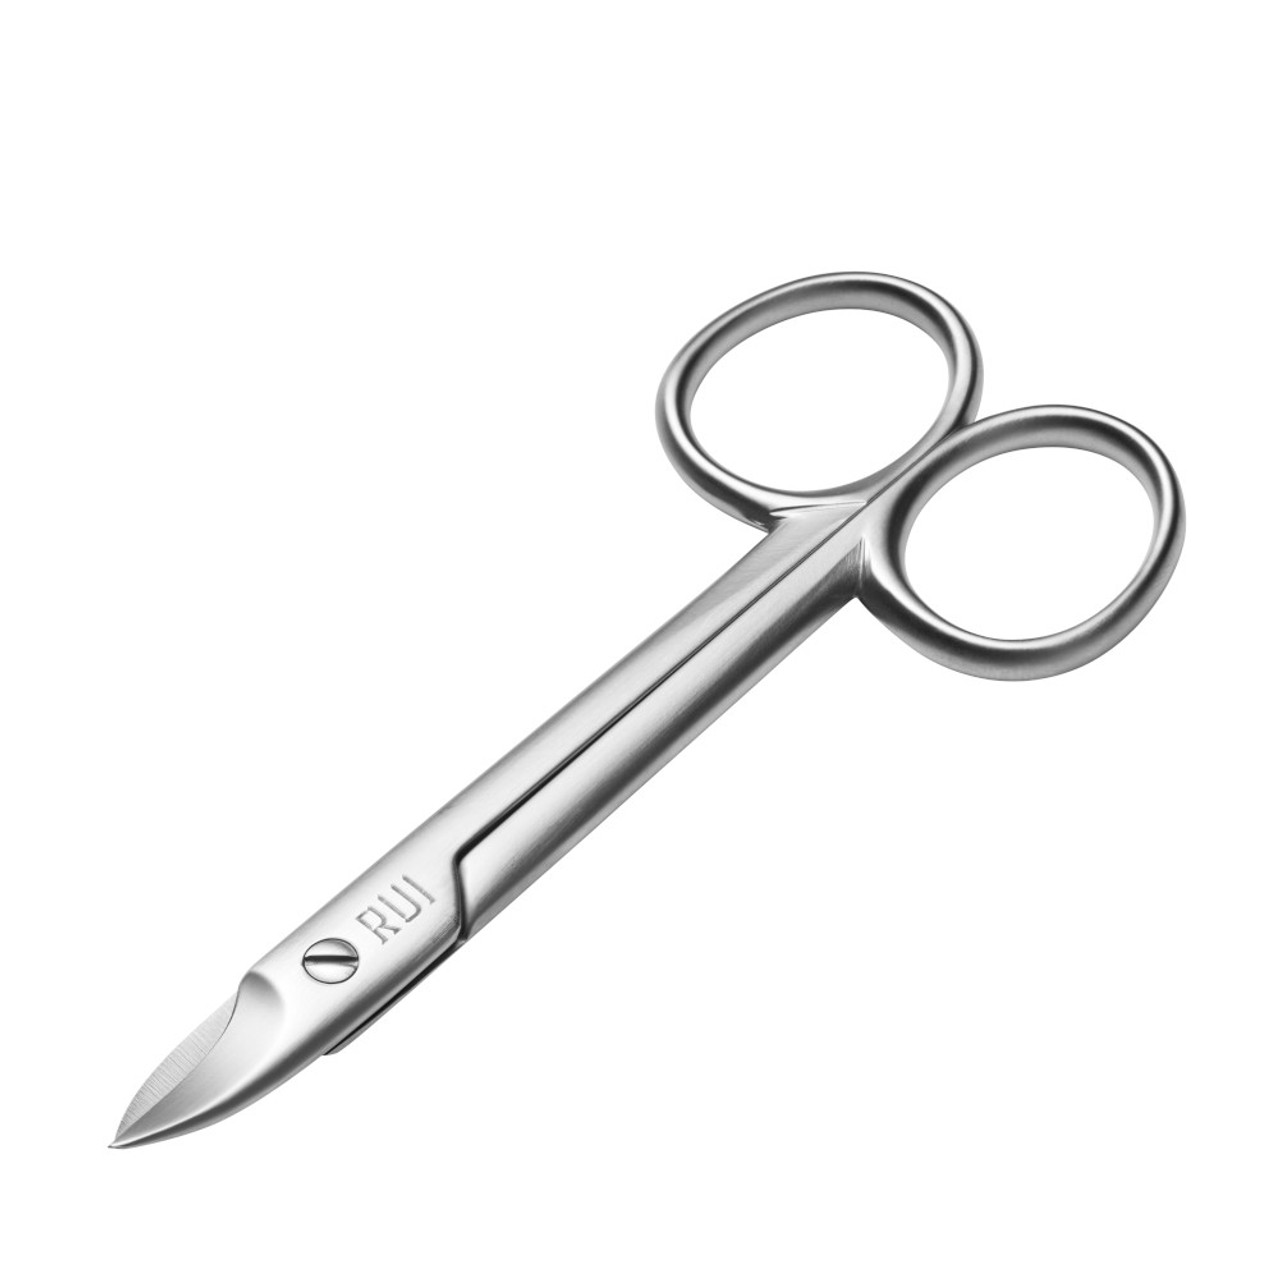 Pro Precision Toenail Scissors, Micro-Serrated Straight Blades